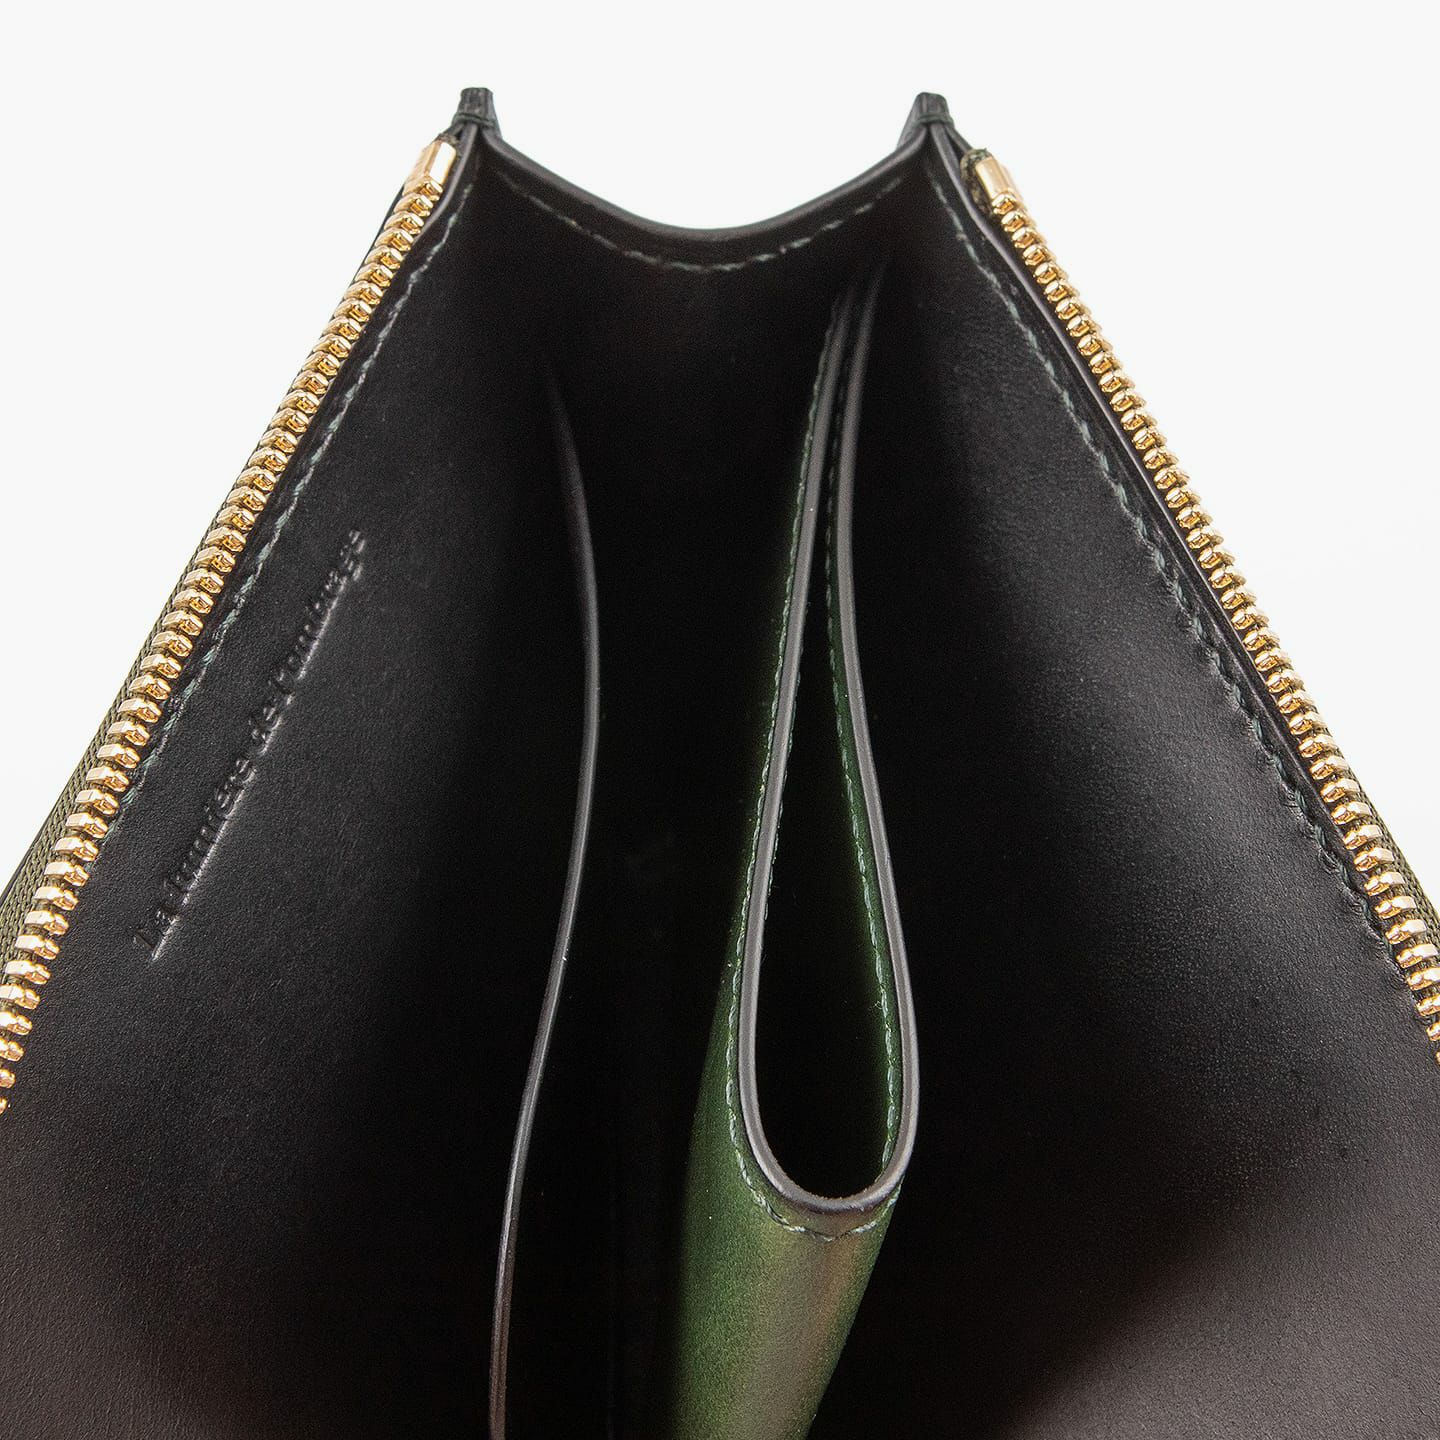 外装＆内装コインポケット（イングラサット）：Green、内装（イングラサット）：Black、糸色：外装＆内装コインポケットと同系色、ファスナー：Gold、引き手：外装と同じ革